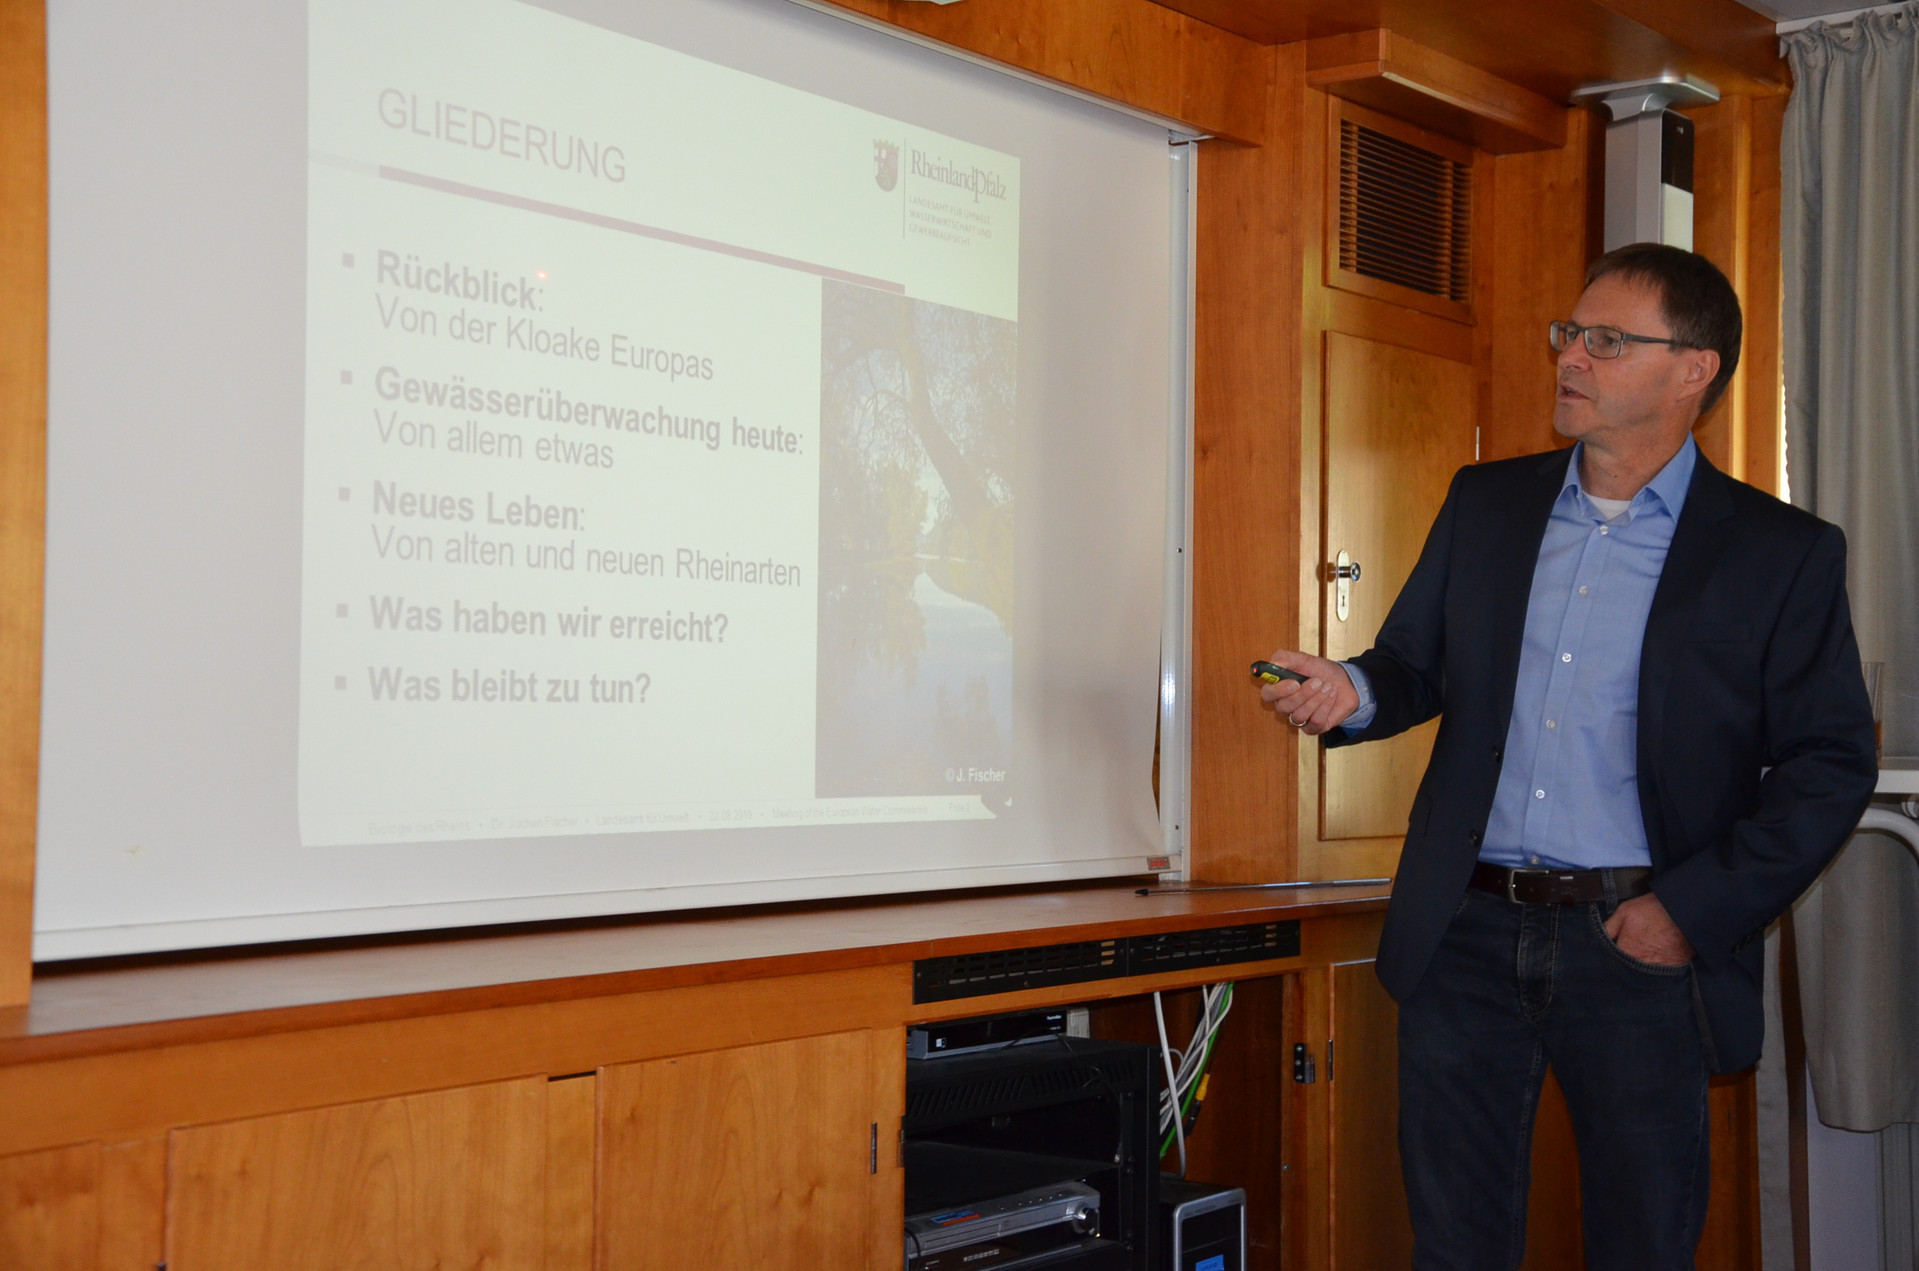 Dr. Jochen Fischer neben einer Projektionsleinwand während seines Vortrags